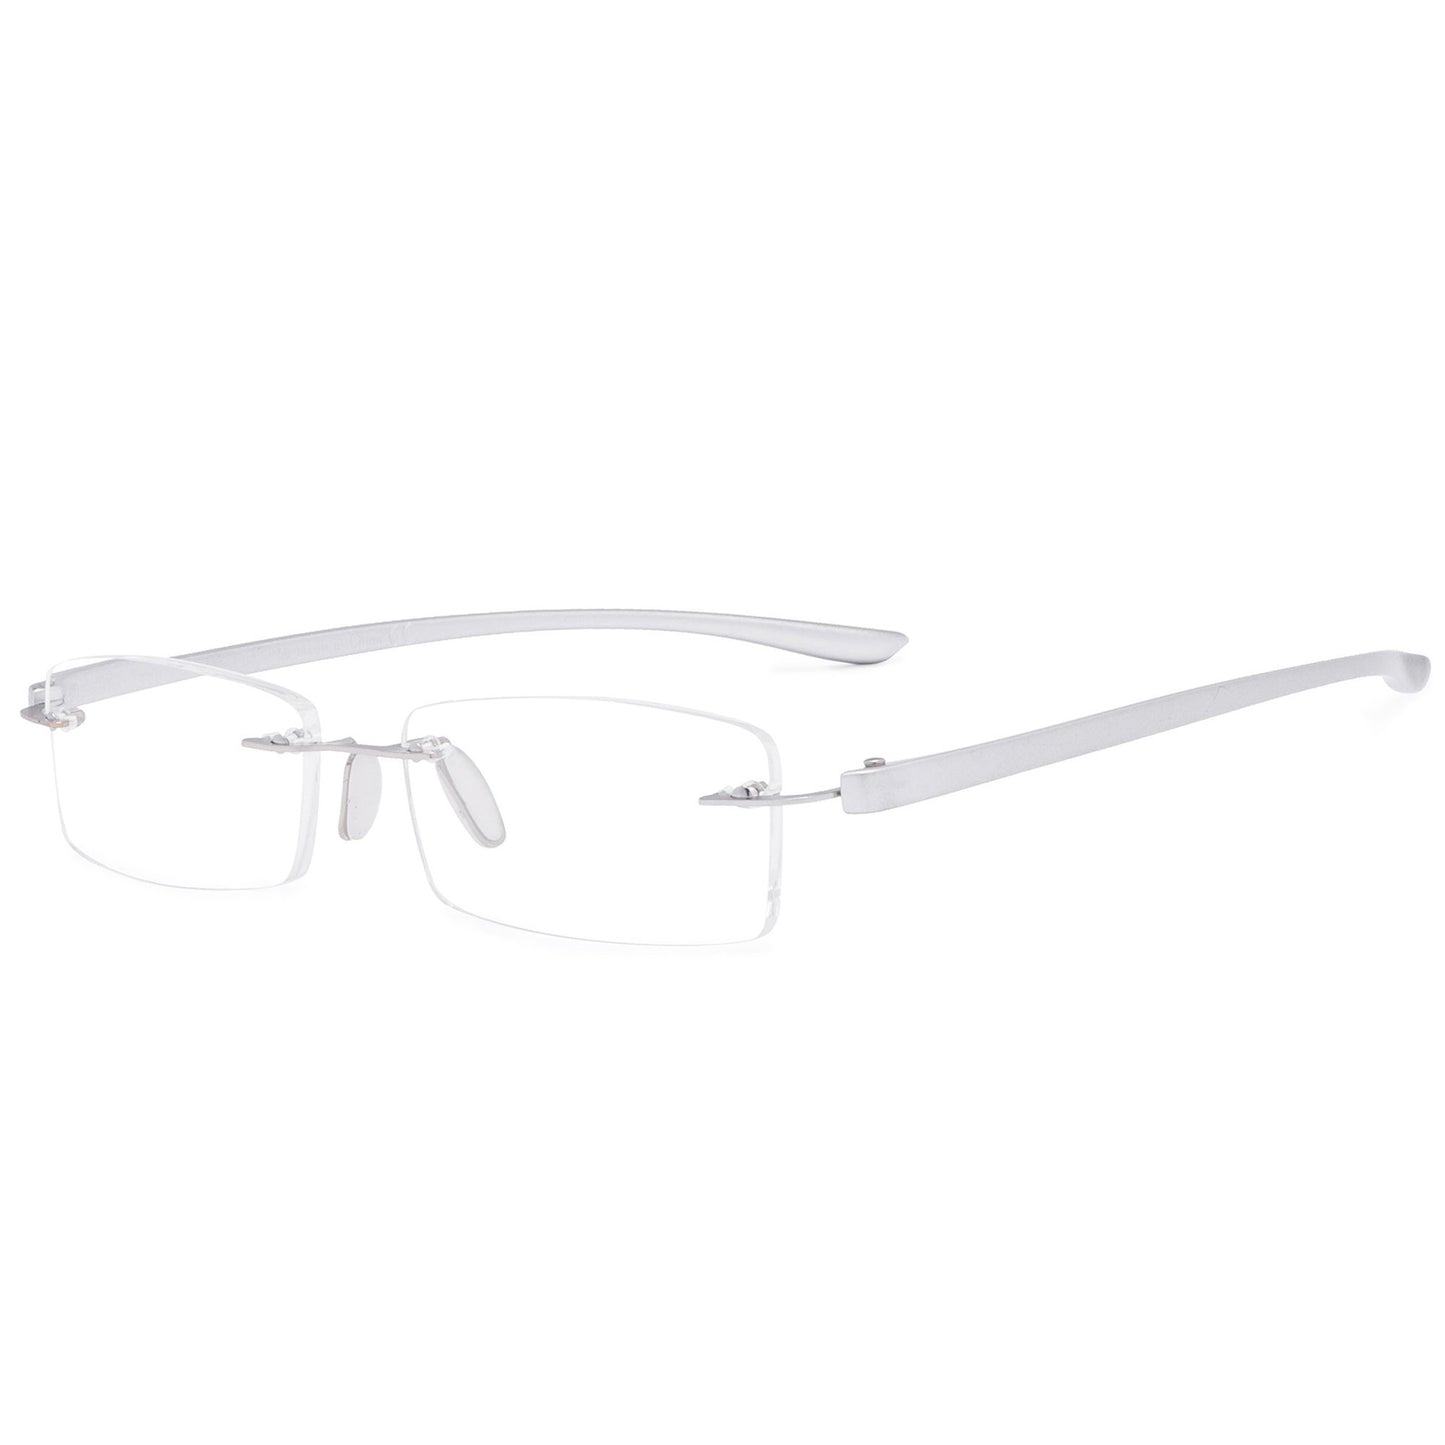 Frameless Small Lenses Reading Glasses Women Men R14001-A